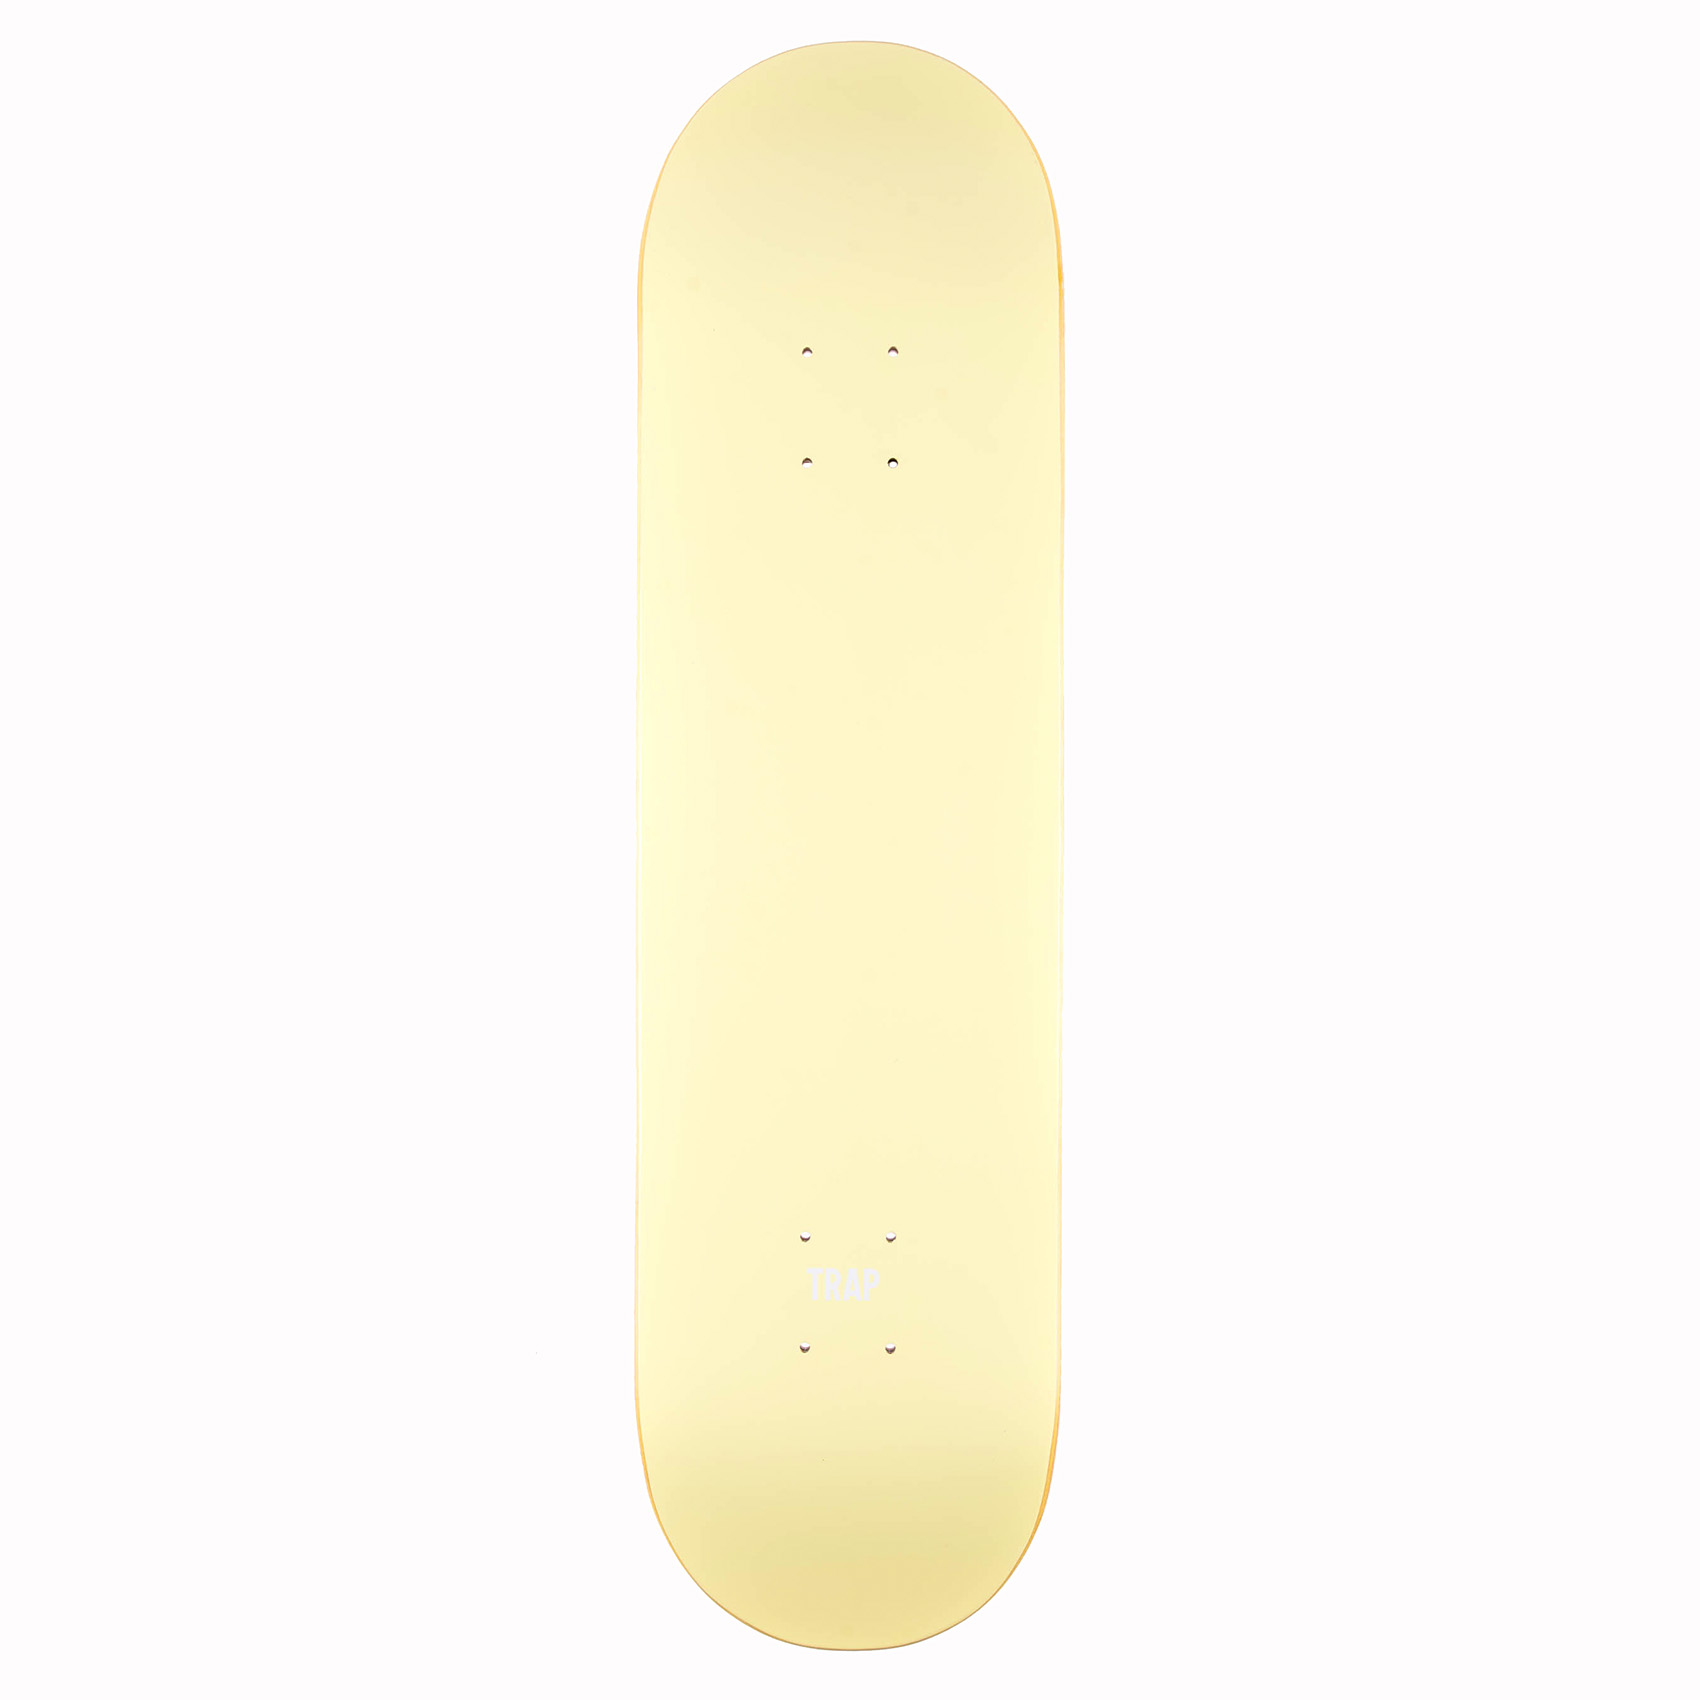 Trap Skateboard Deck Monochrome Series 8.125" (yellow)